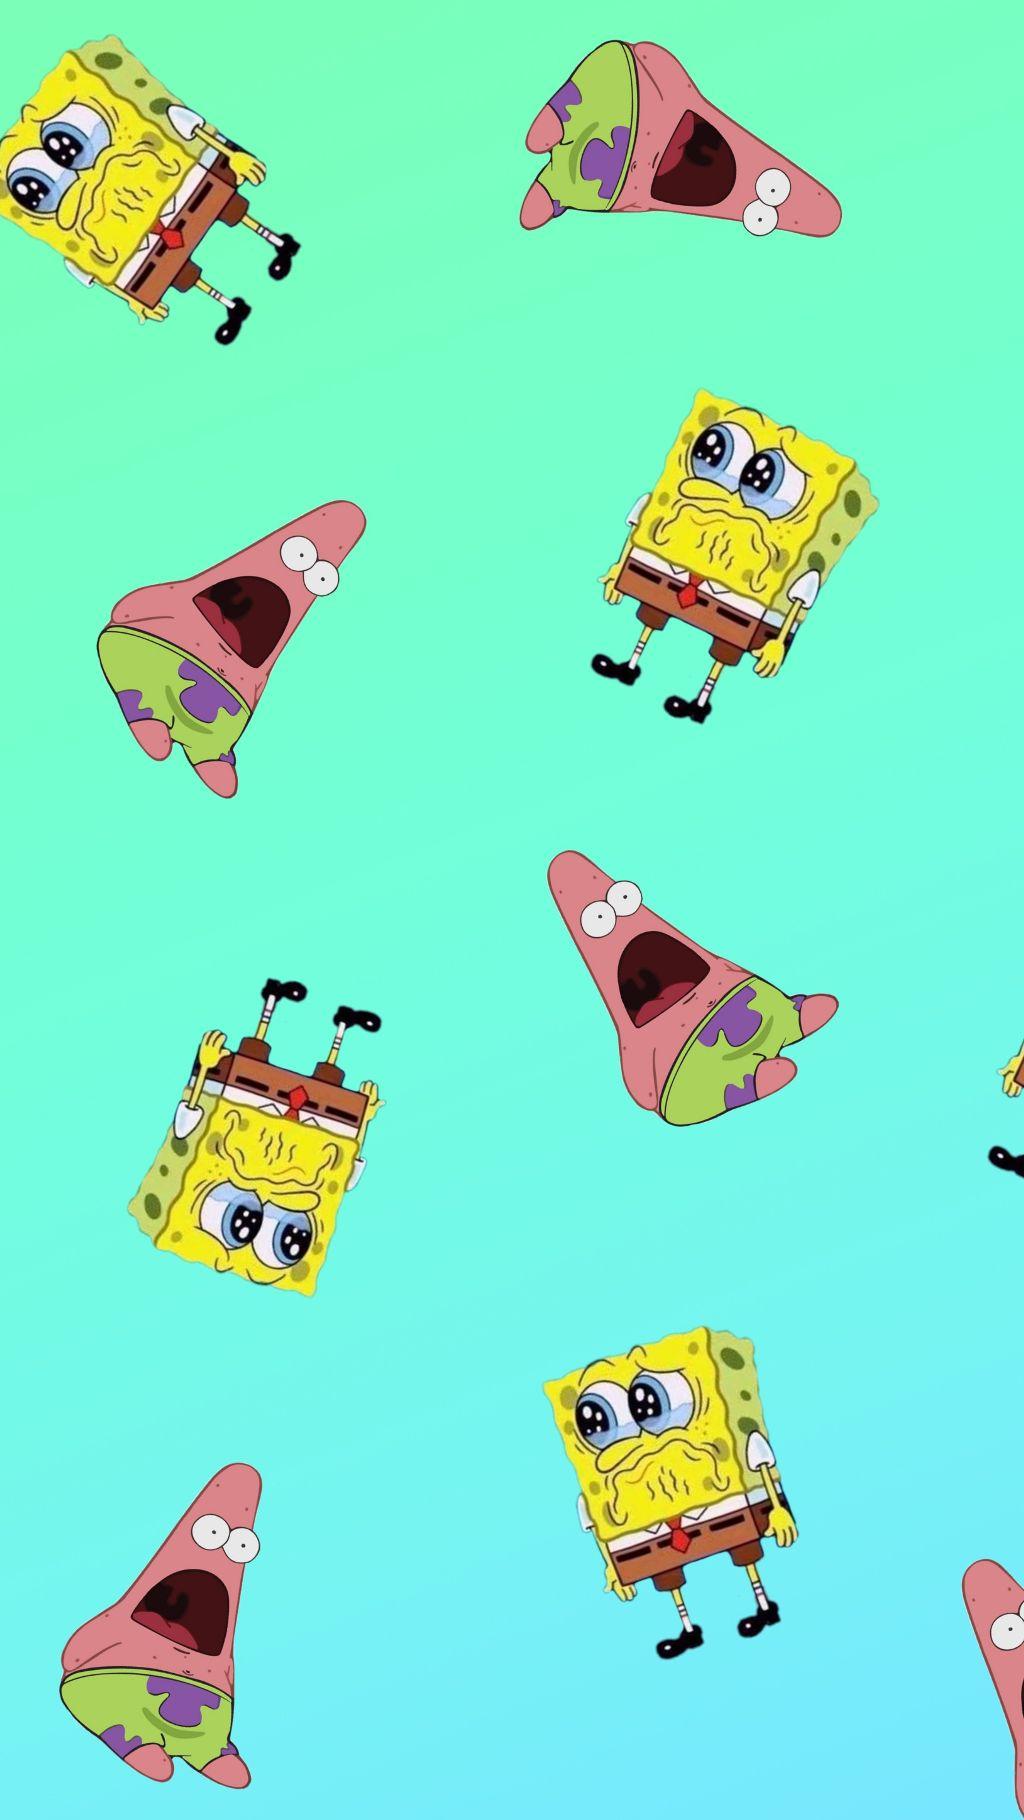 Spongebob&Patrick Wallpaper - NawPic